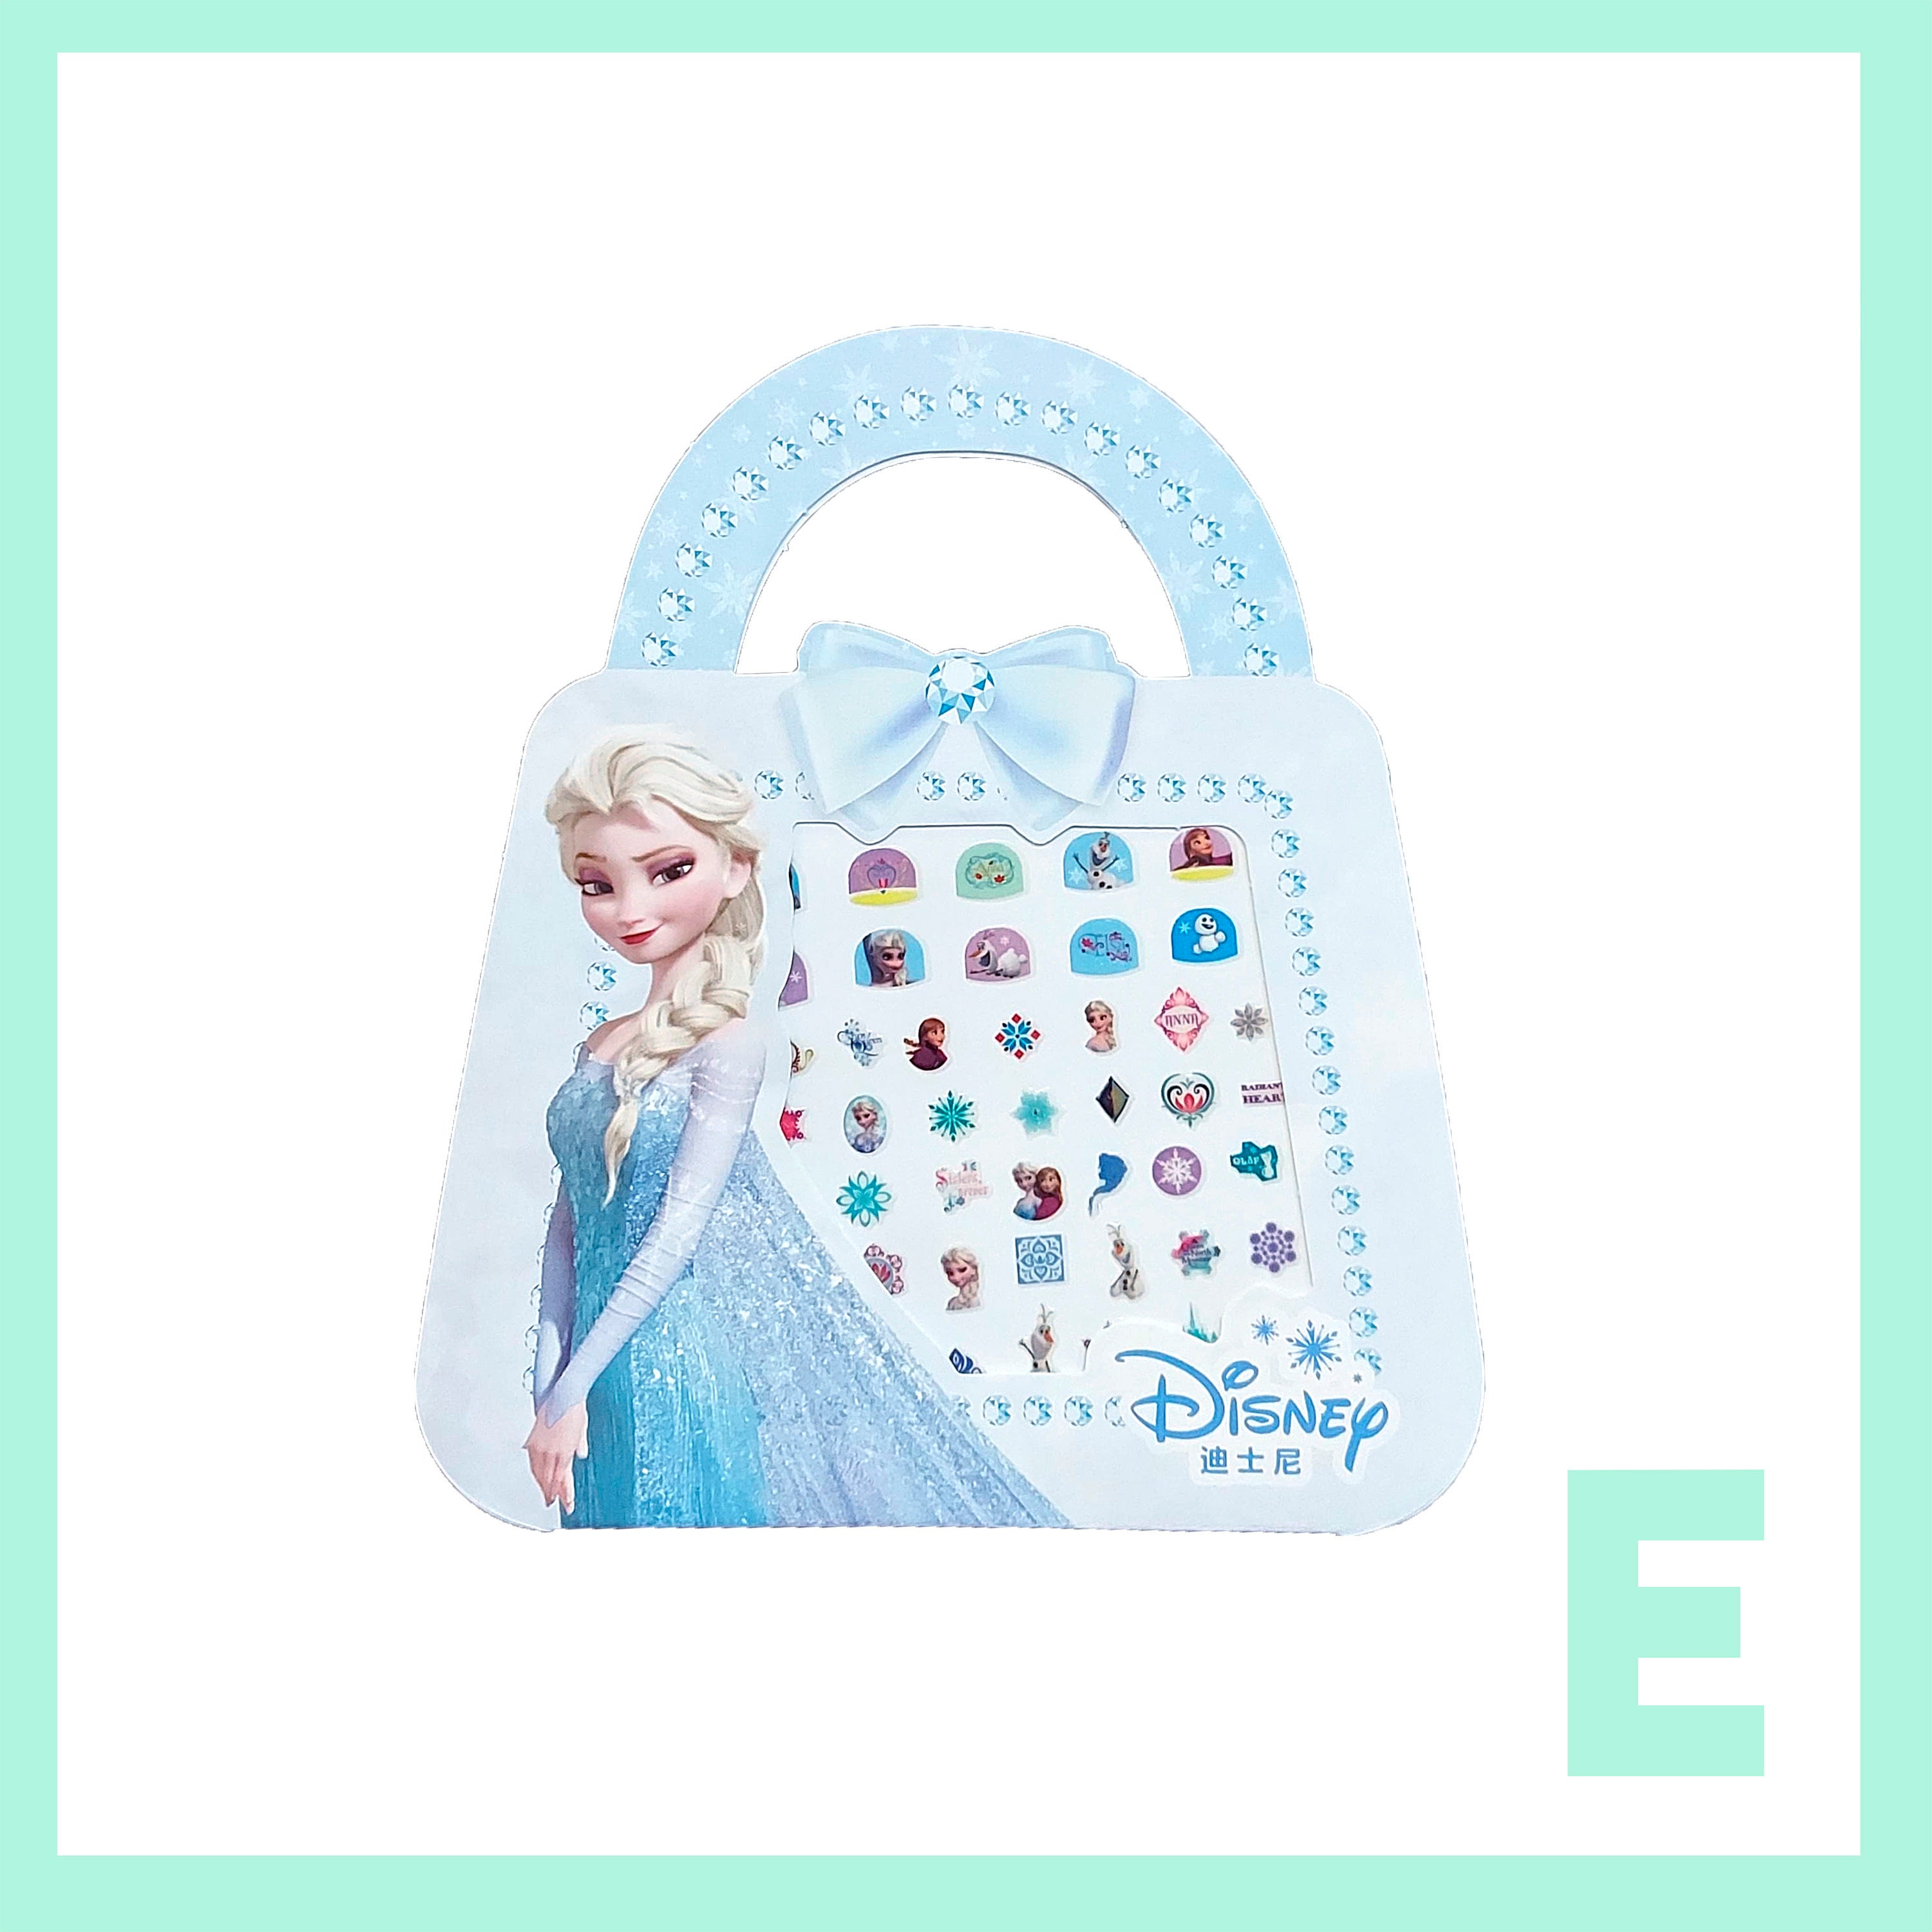 Elsa Frozen Princess Gift Set Kids Girls Nail Stickers /HB Pencil/ruler/3d  Sticker/laser Sticker Box/art Decal Party Filler Random Pack Sent 